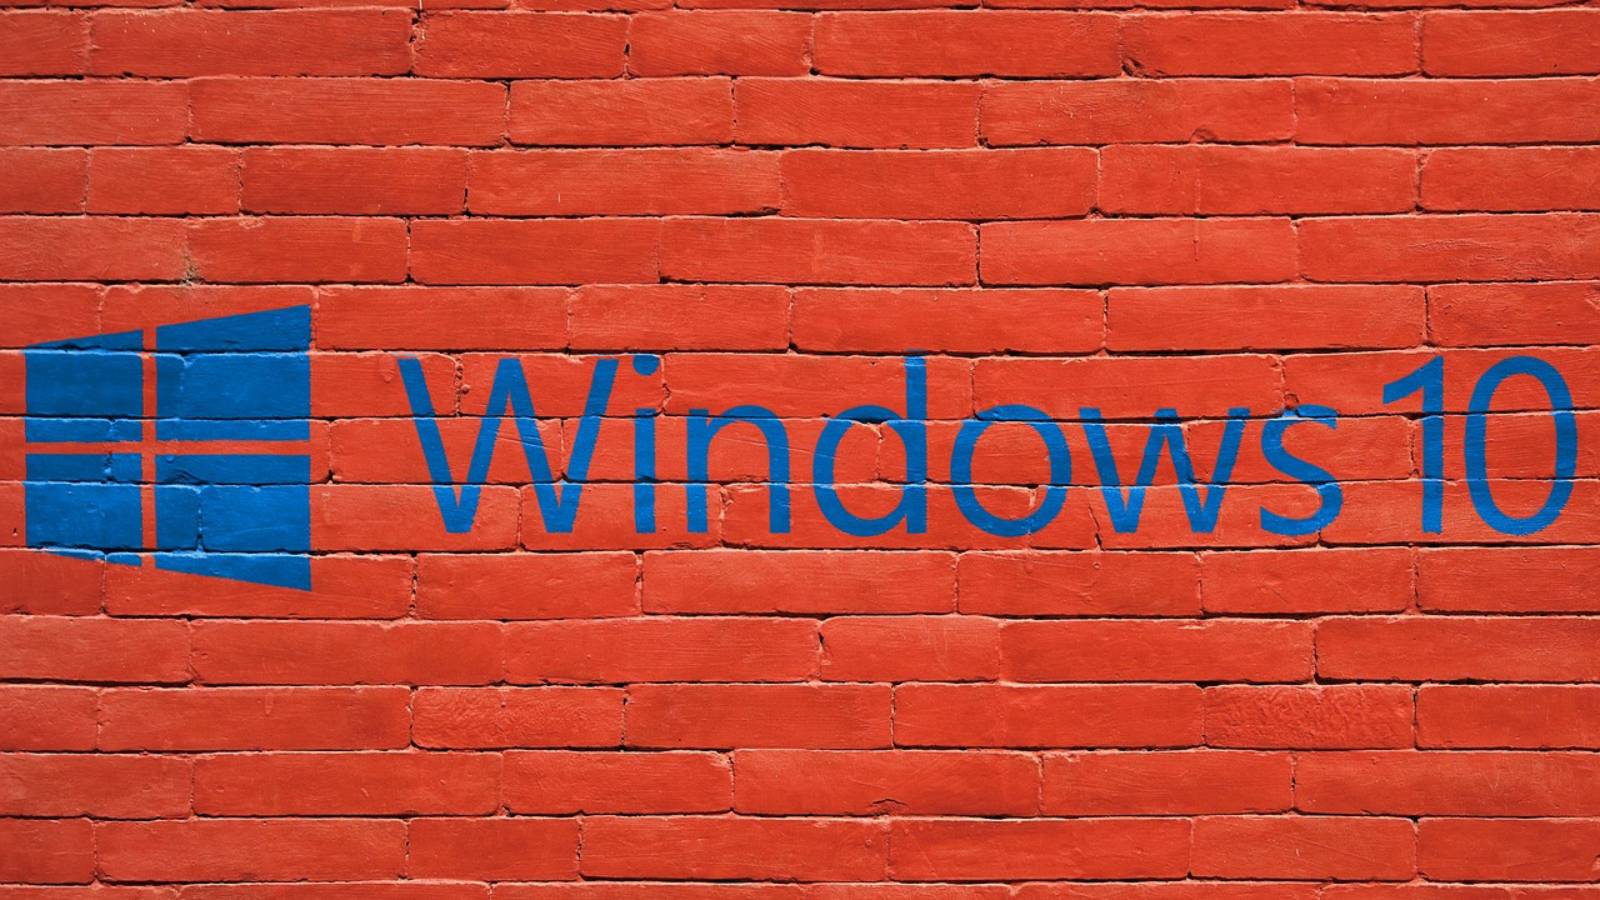 Windows 10-News-Update vom Oktober 2019